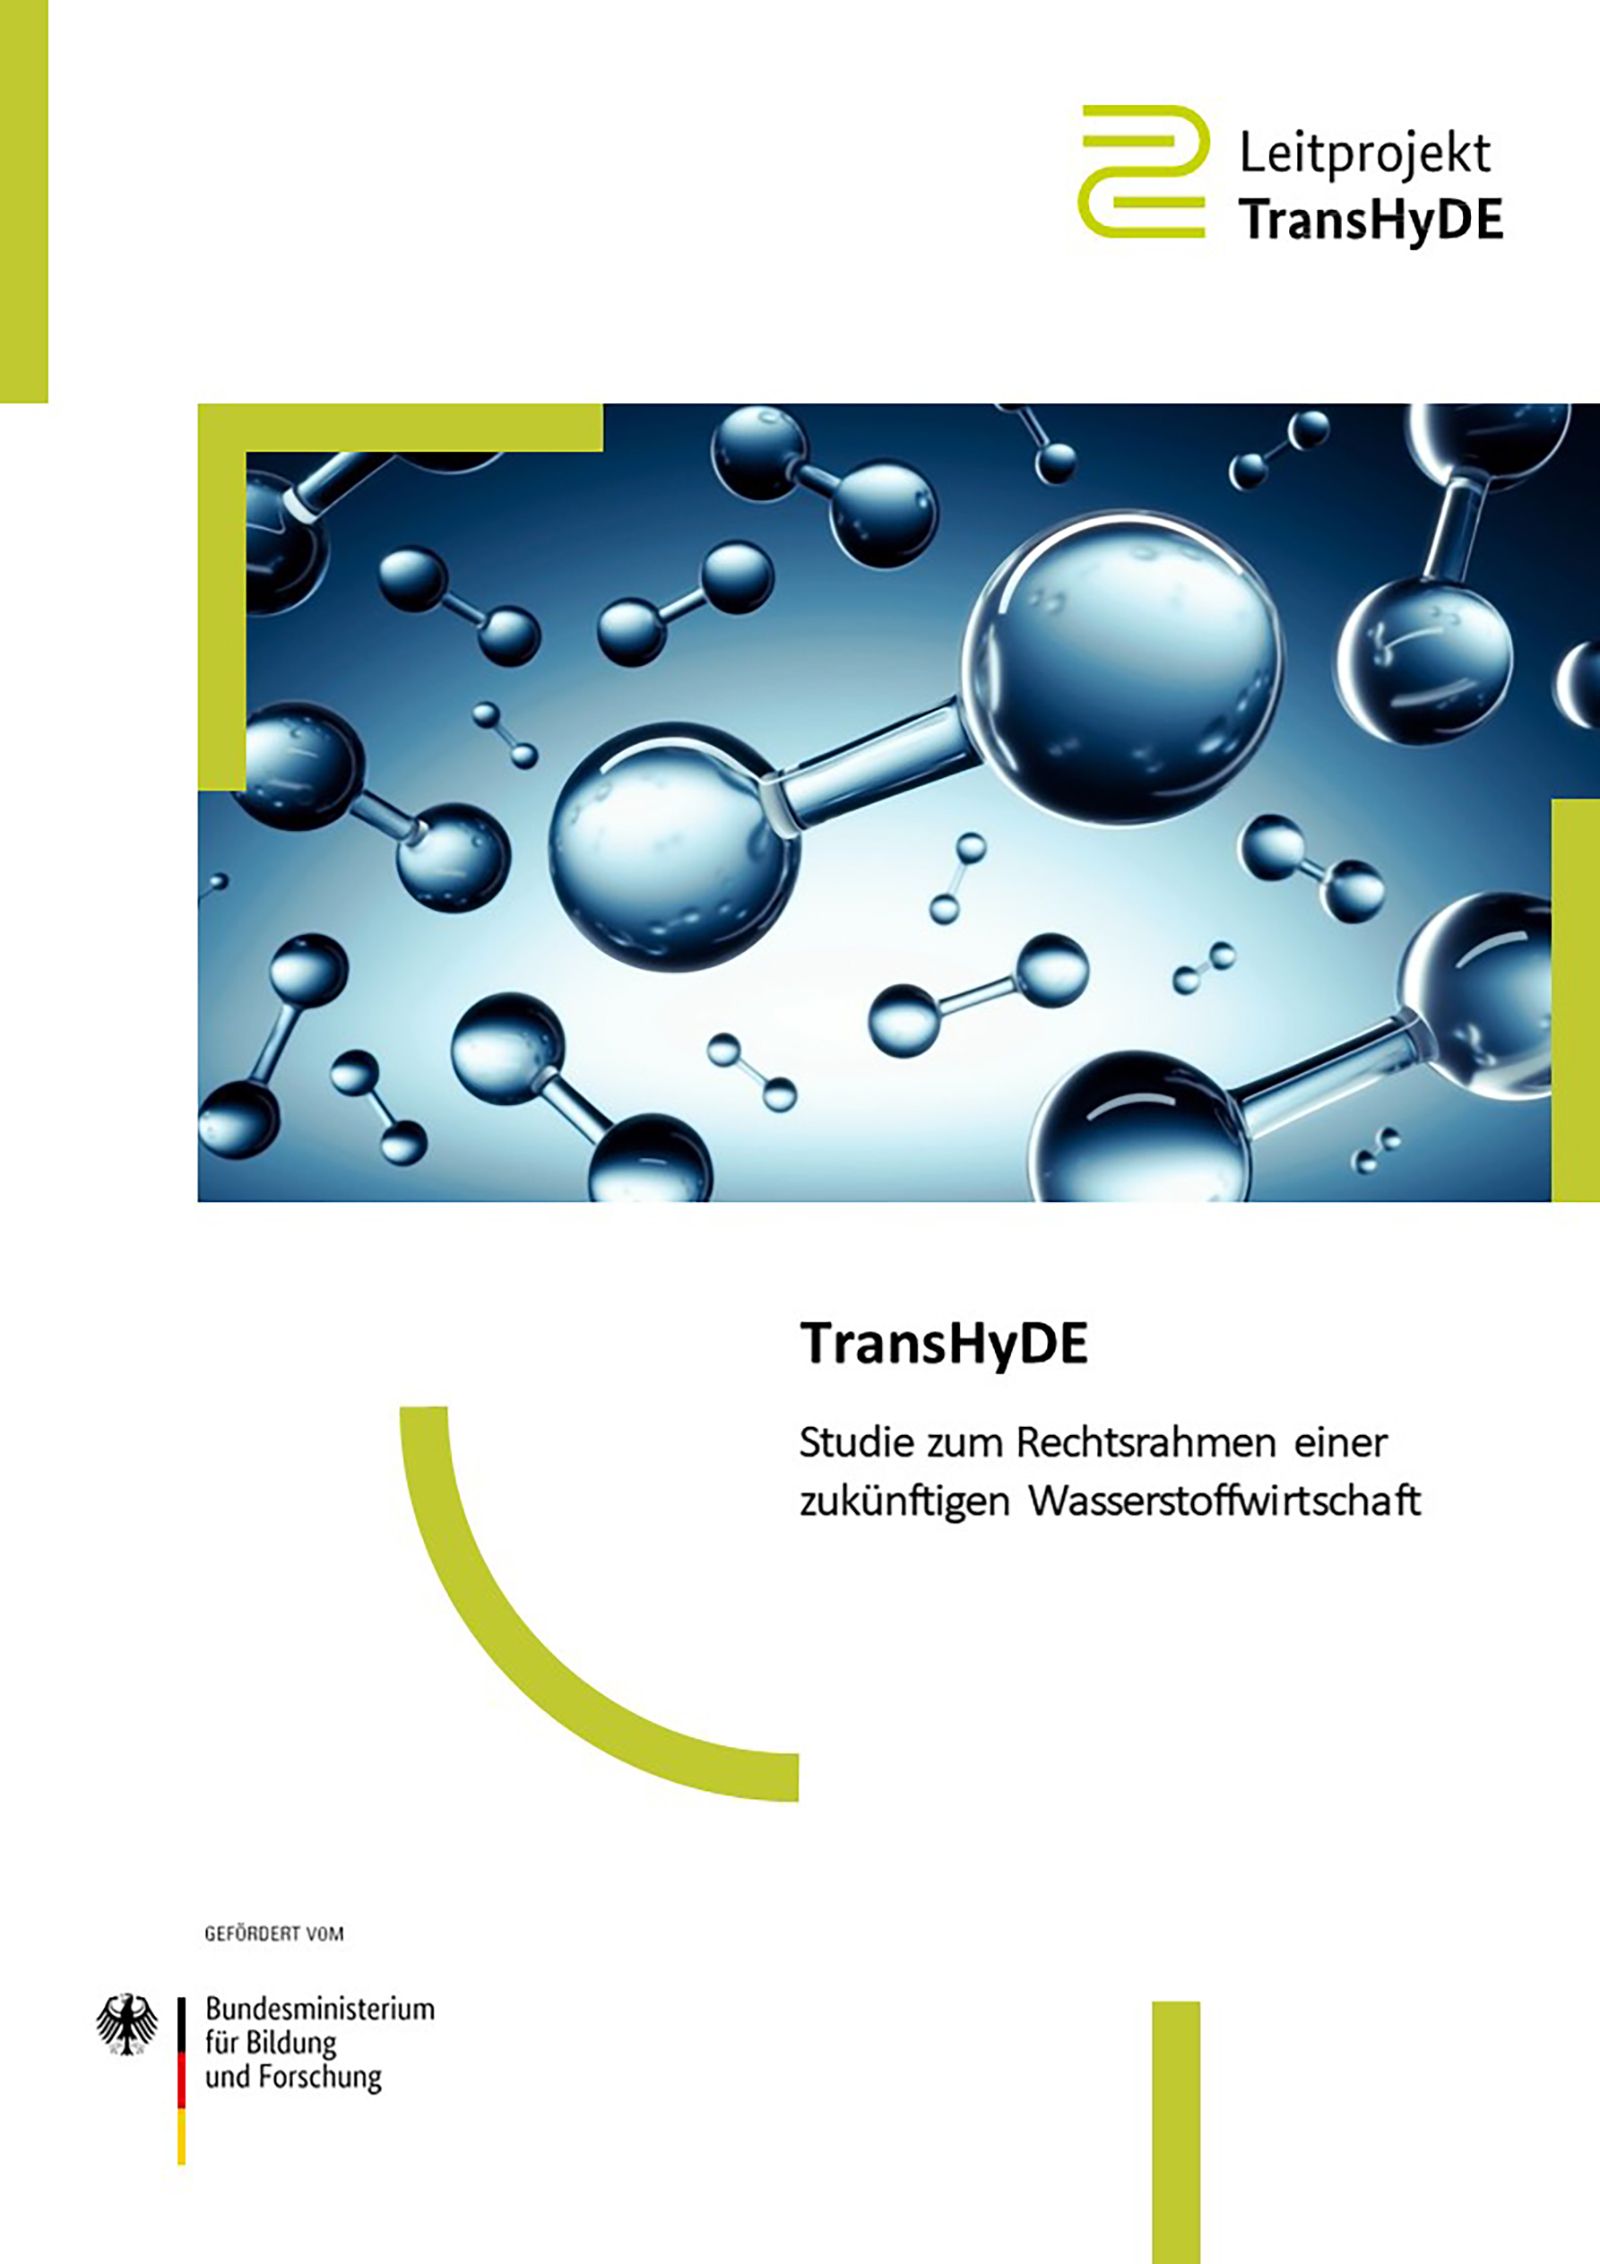 Das Bild zeigt das Titelblatt der TransHyDE-Studie zum Rechtsrahmen einer zukünftigen Wasserstoffwirtschaft.